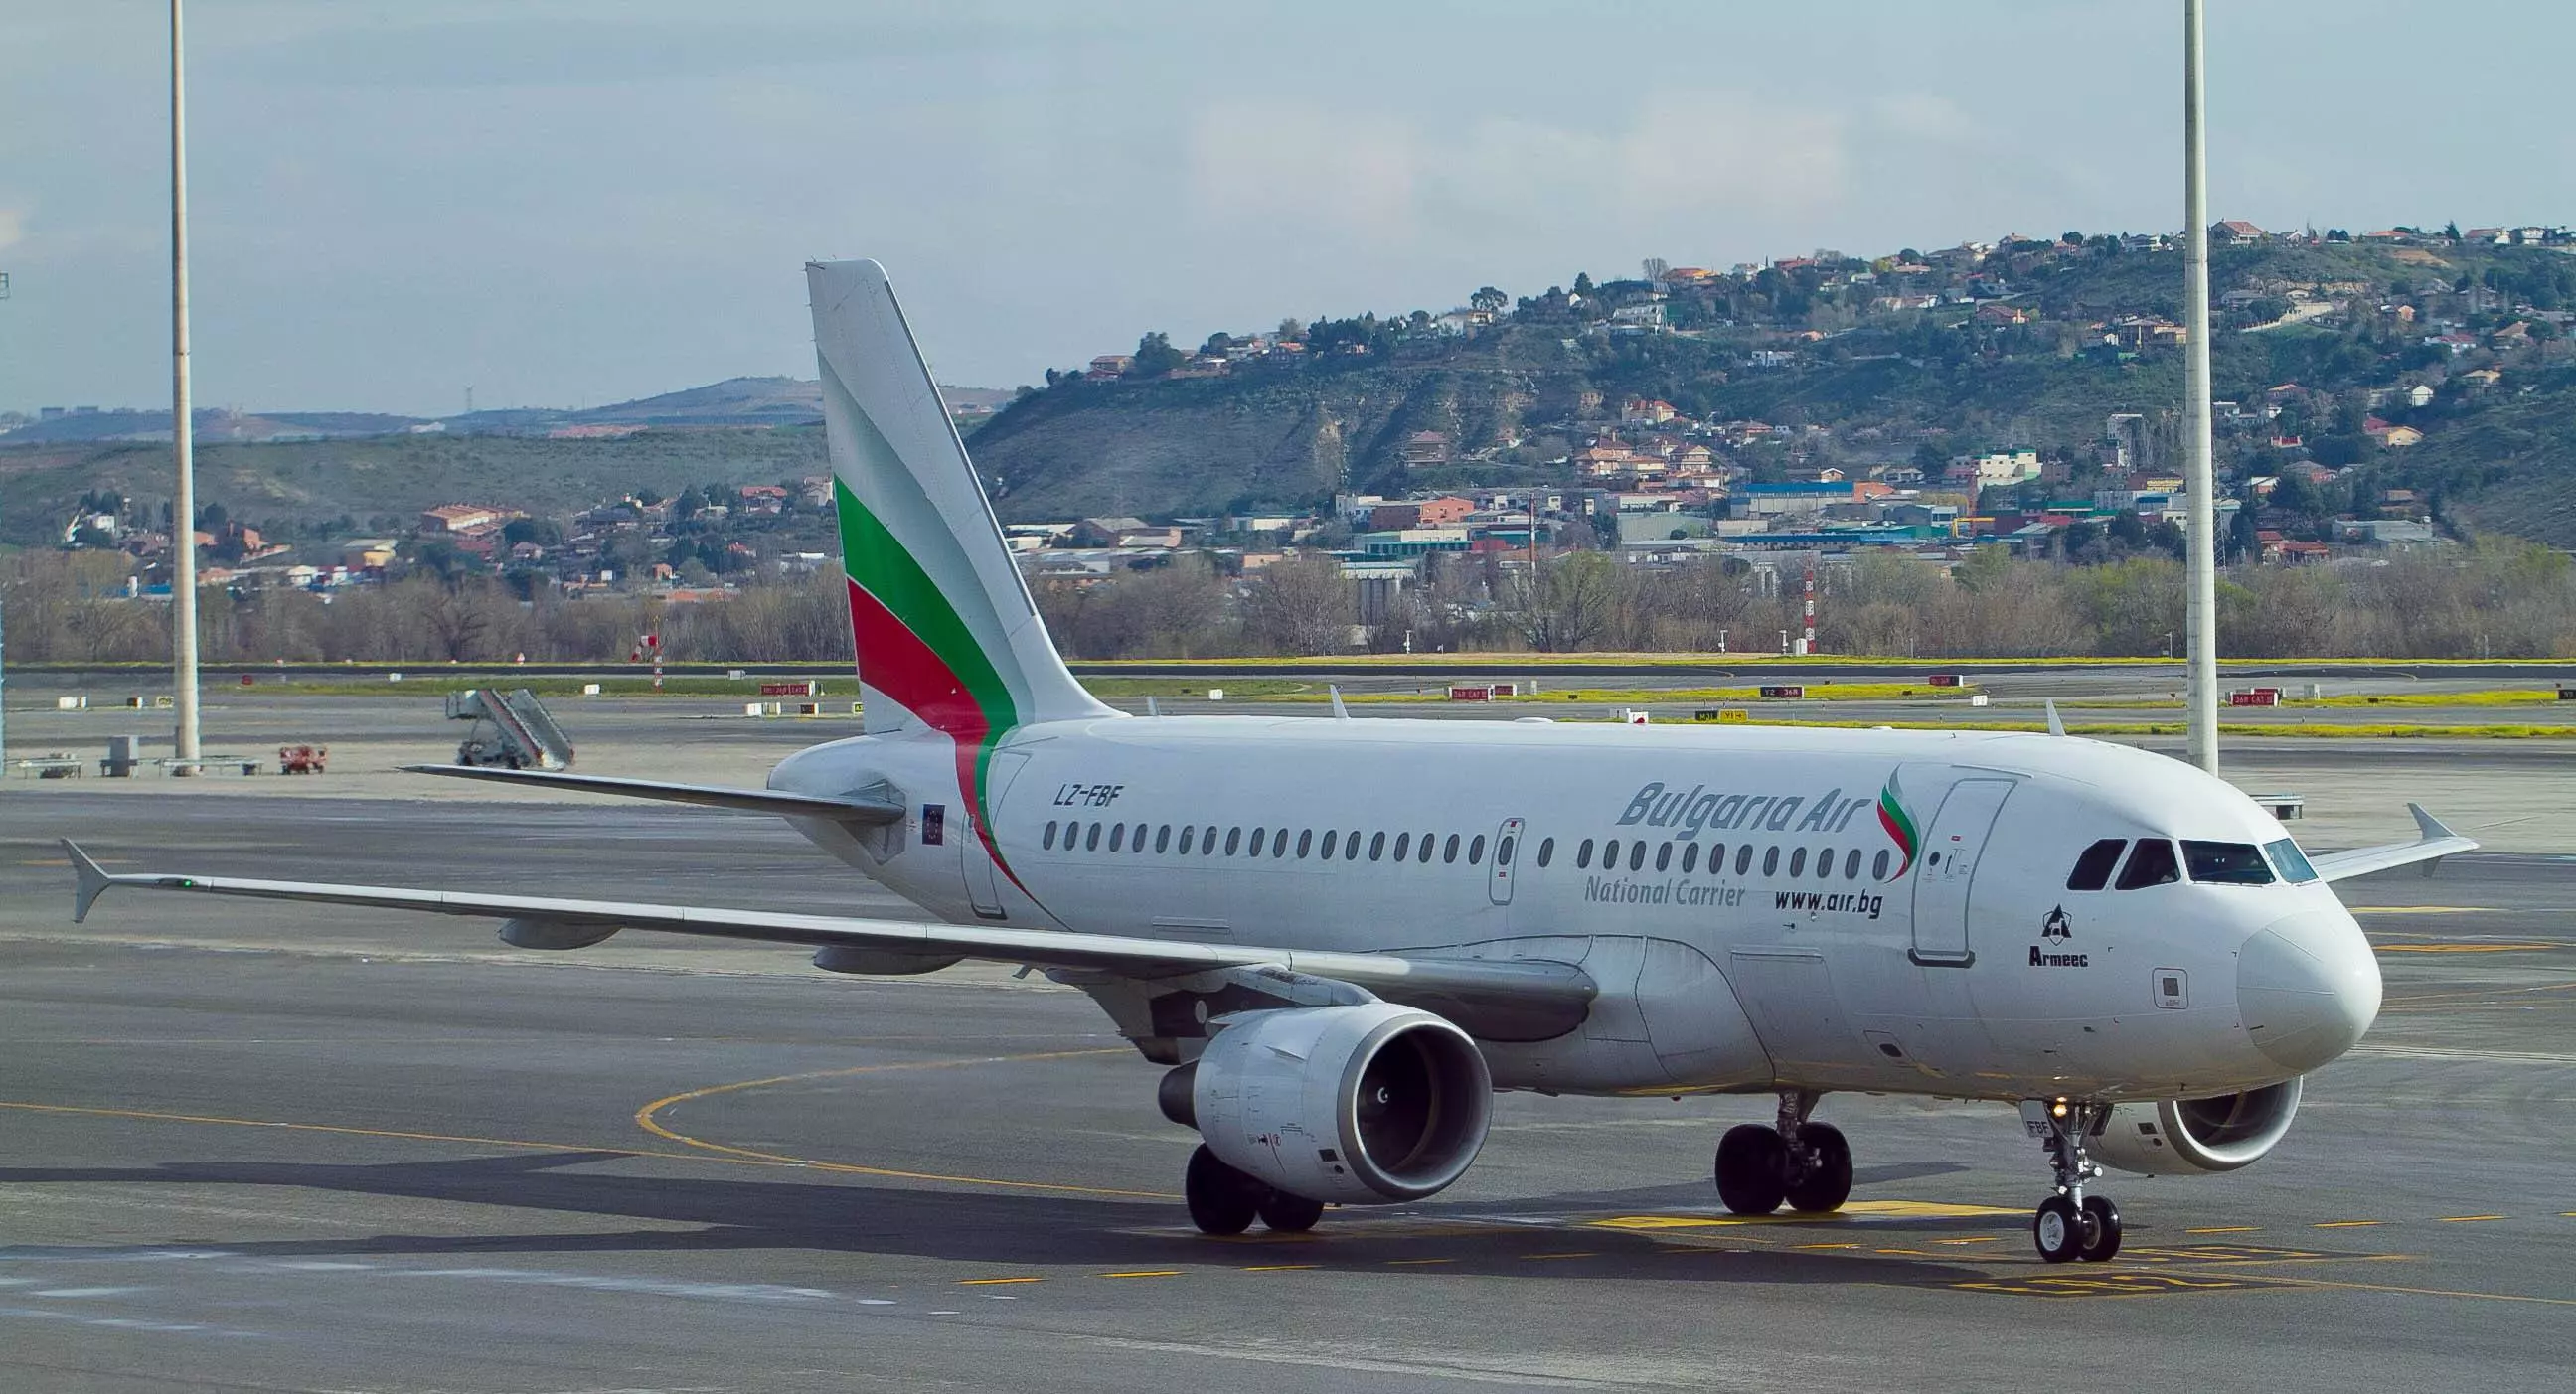 Болгарские авиалинии bulgaria air (болгария эйр): обзор авиакомпании, услуги, регистрация на рейс онлайн на русском языке, другие авиакомпании болгарии